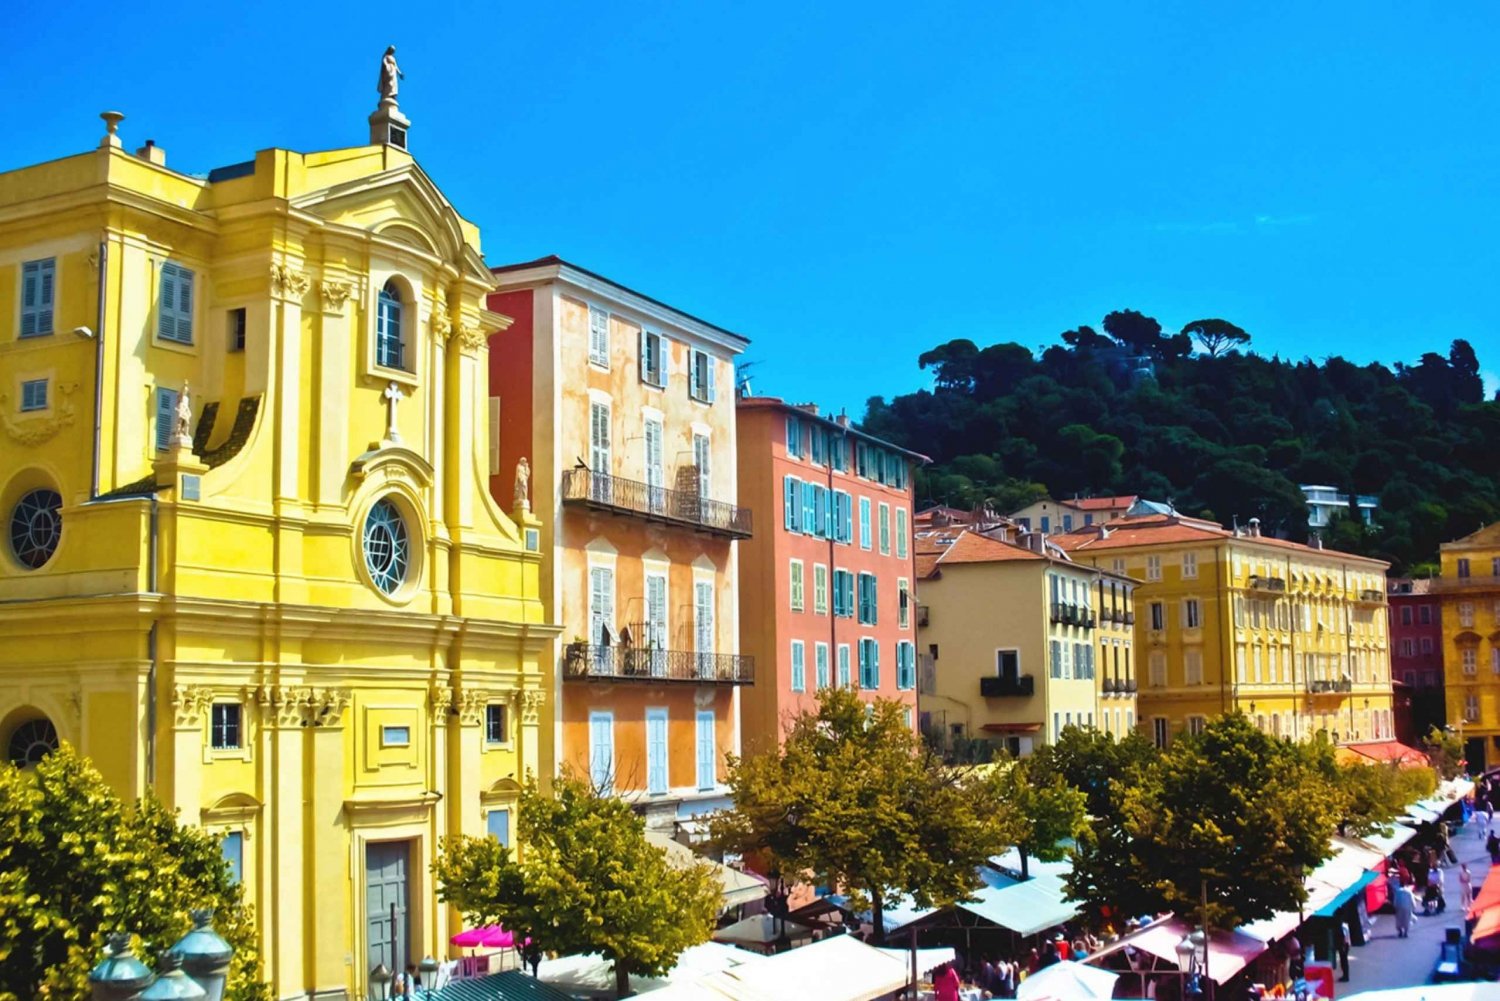 Vieux Nice : Upptäcktspromenad och läsvandring